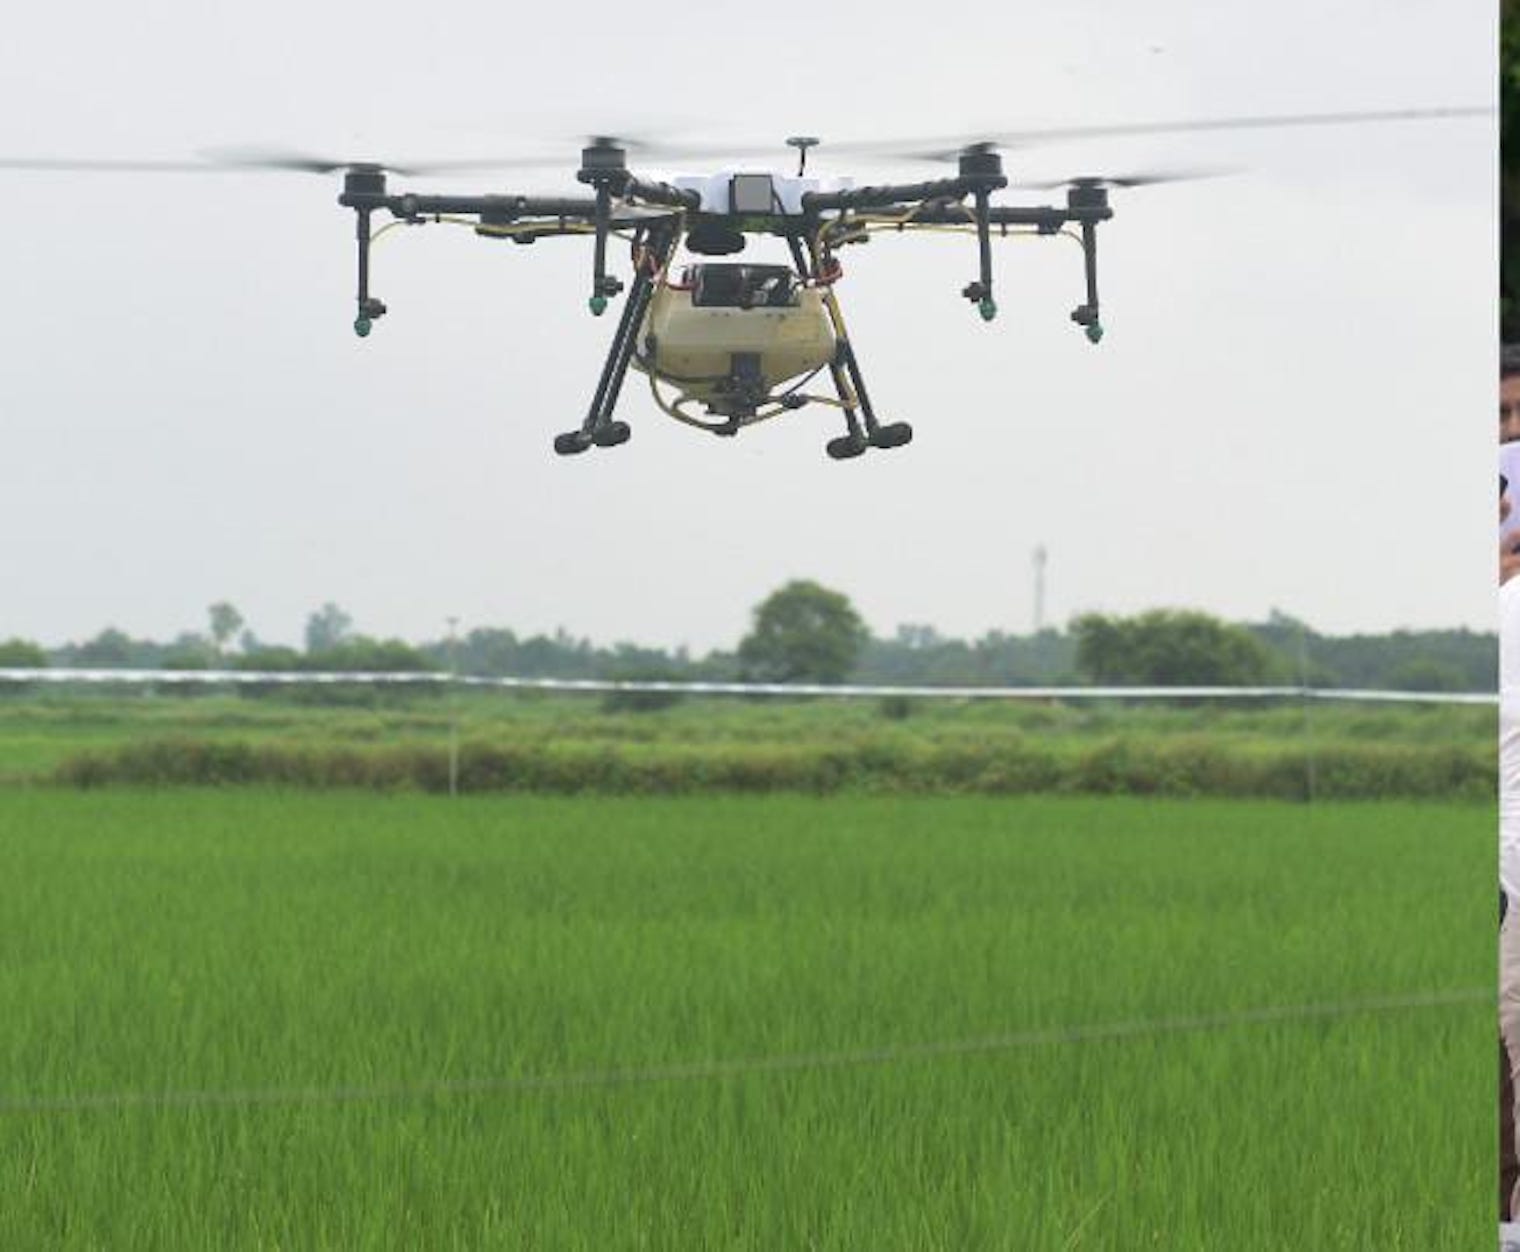 Agriculture, drone farming, farming, Uttar Pradesh Government, Uttar Pradesh News, Yogi Government, योगी सरकार